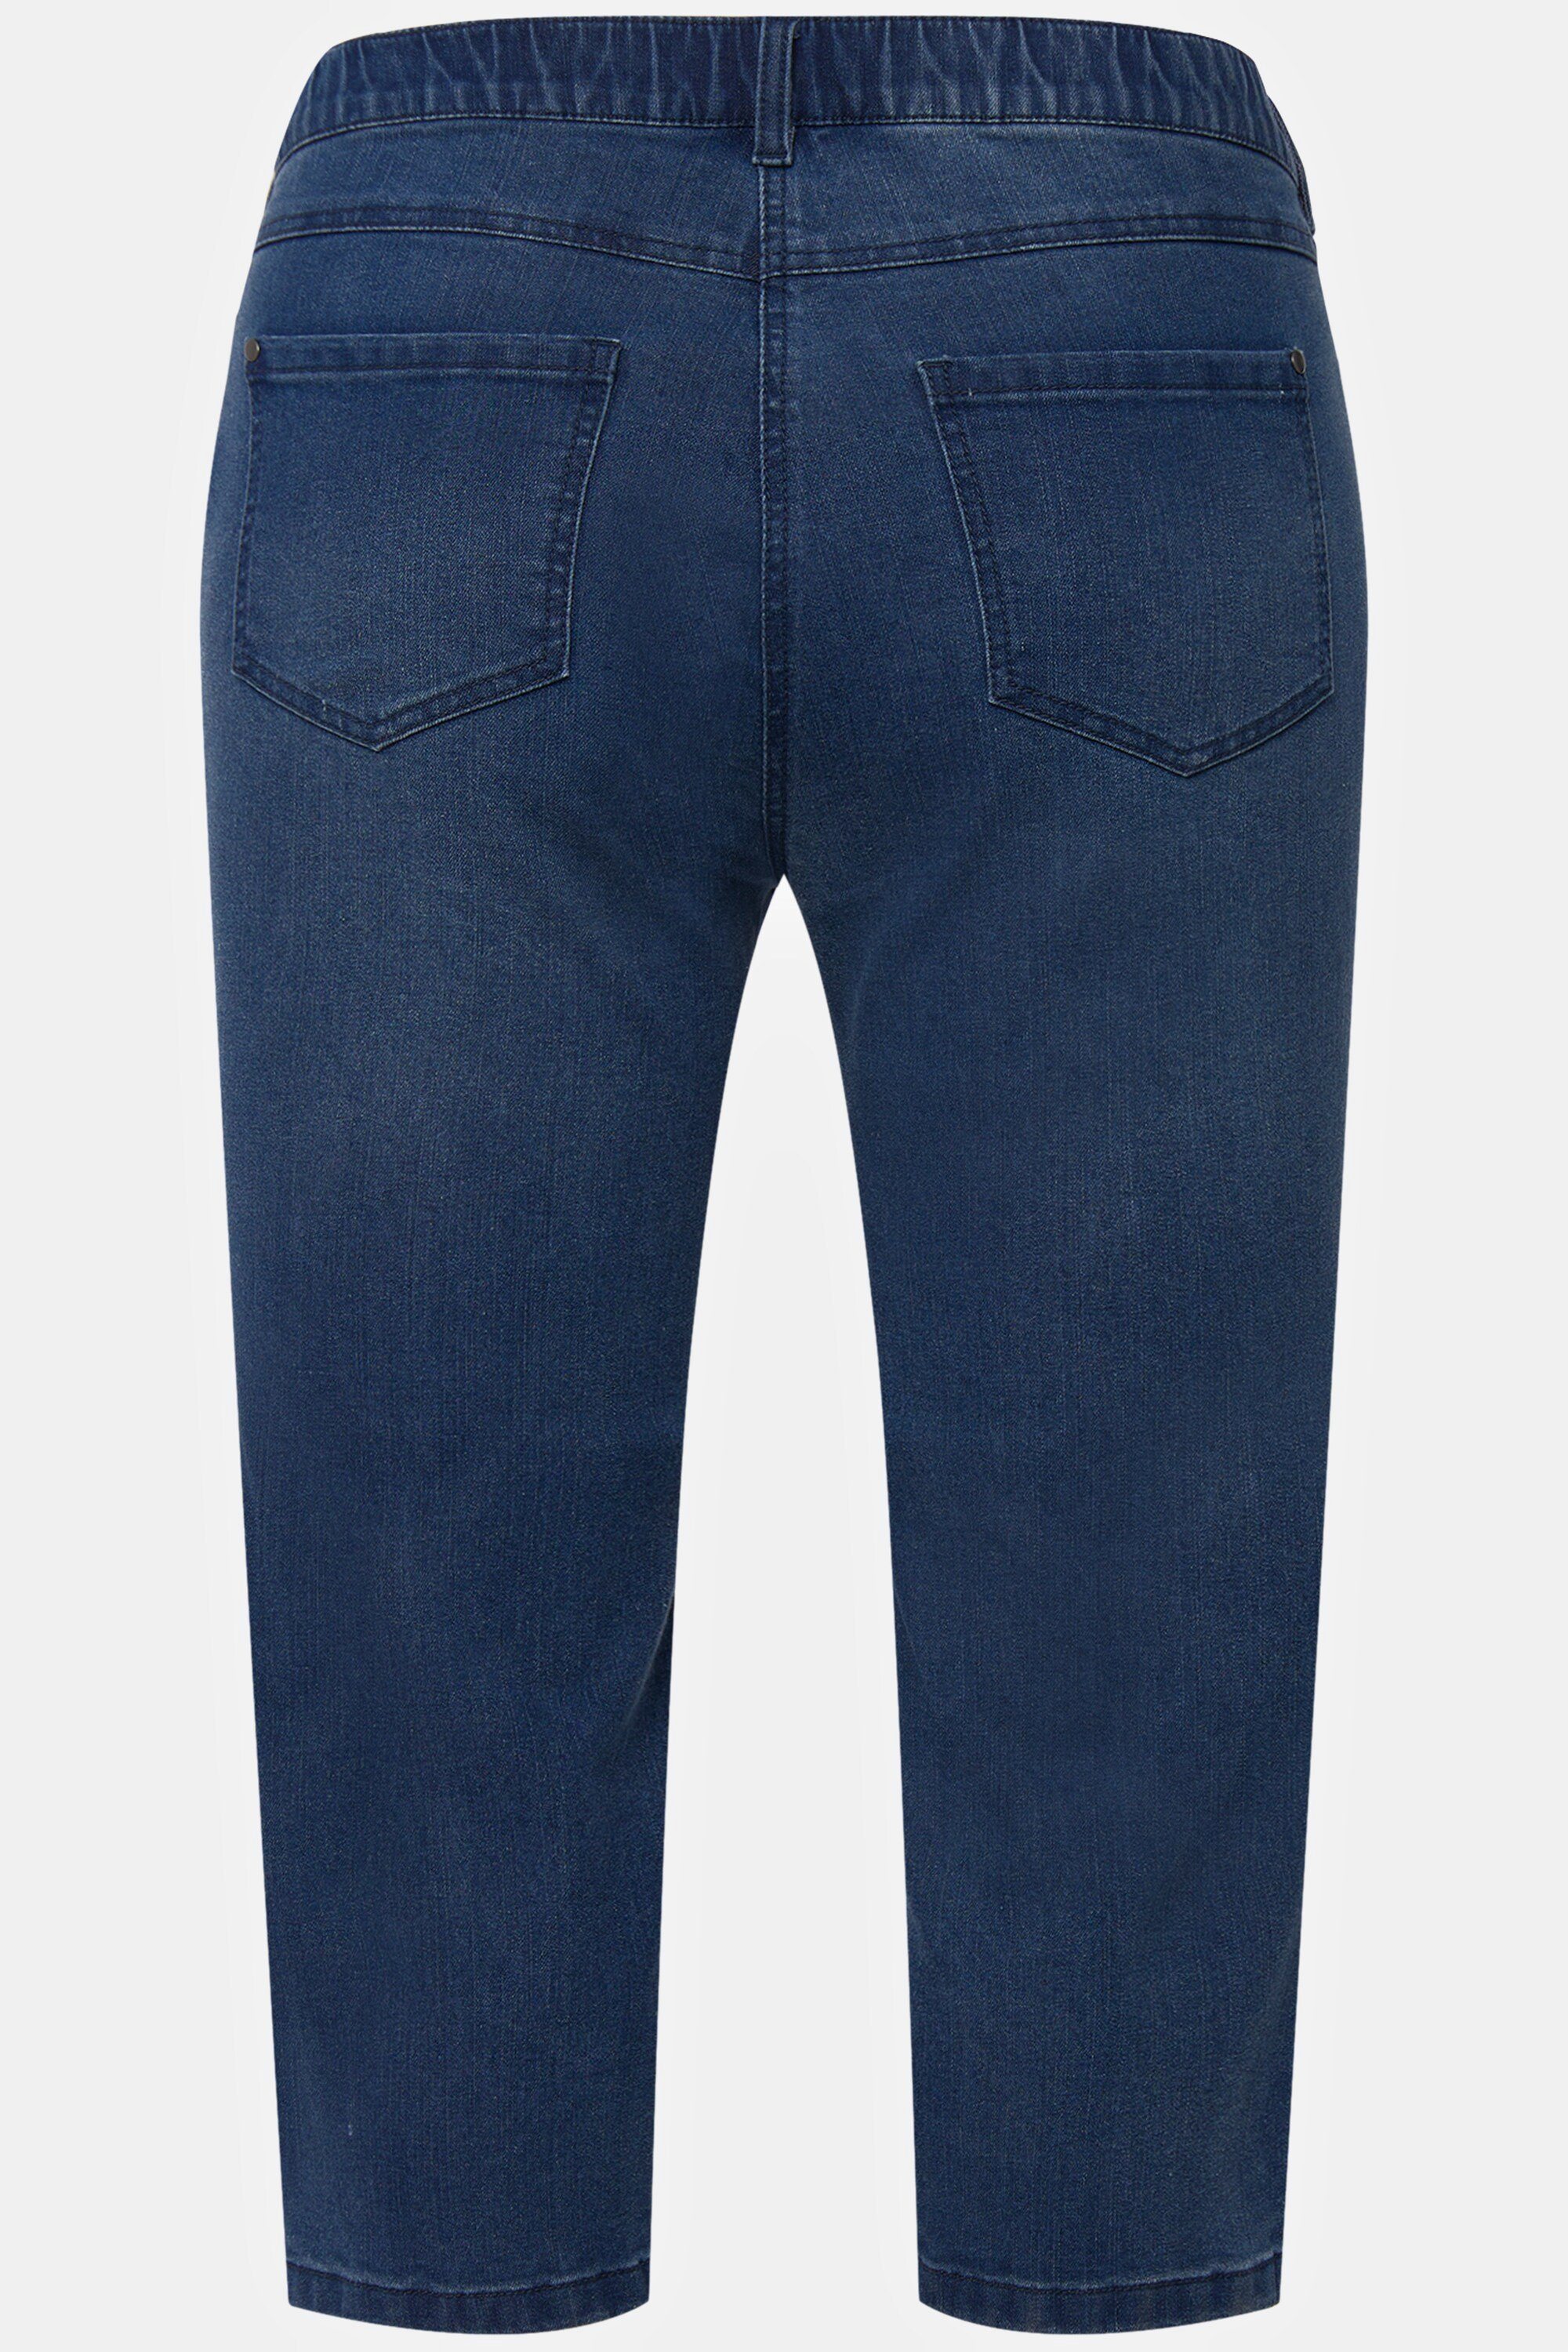 blue light Capri Popken Funktionshose Ulla schmale Jeans 5-Pocket-Form Sarah